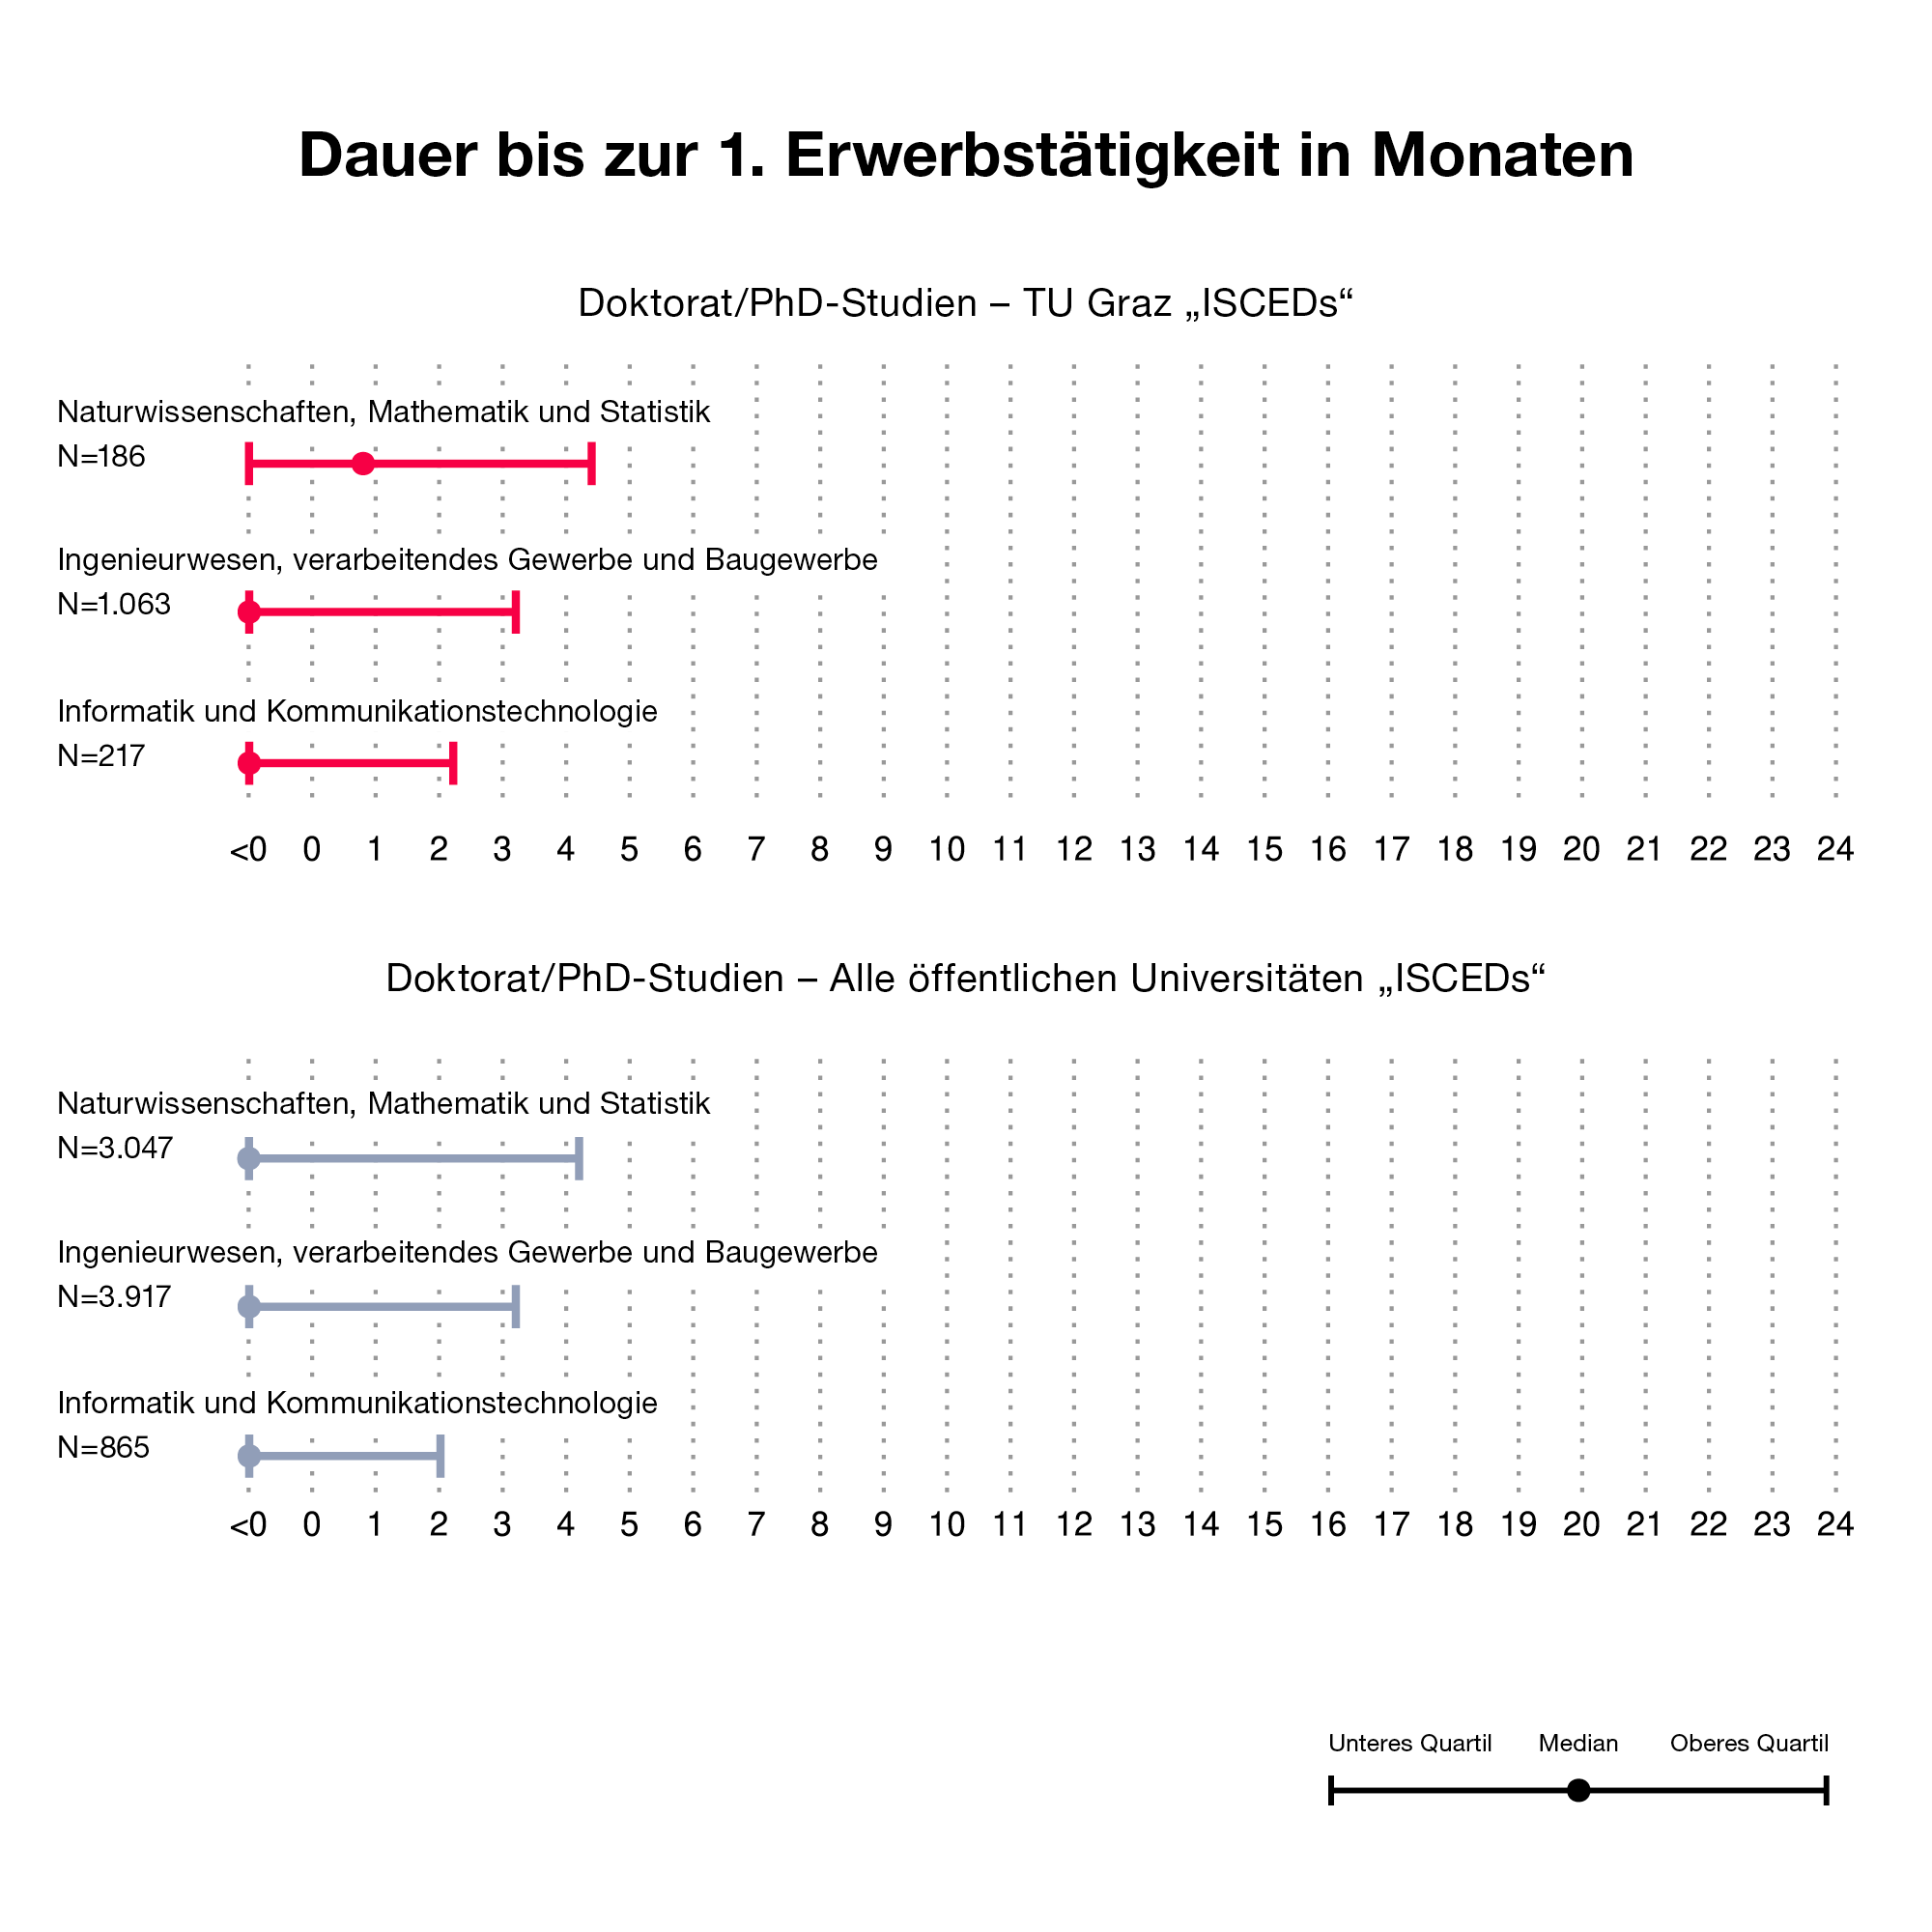 Grafik über die Dauer bis zur 1. Erwerbstätigkeit nach Doktoratsabschluss an der TU Graz